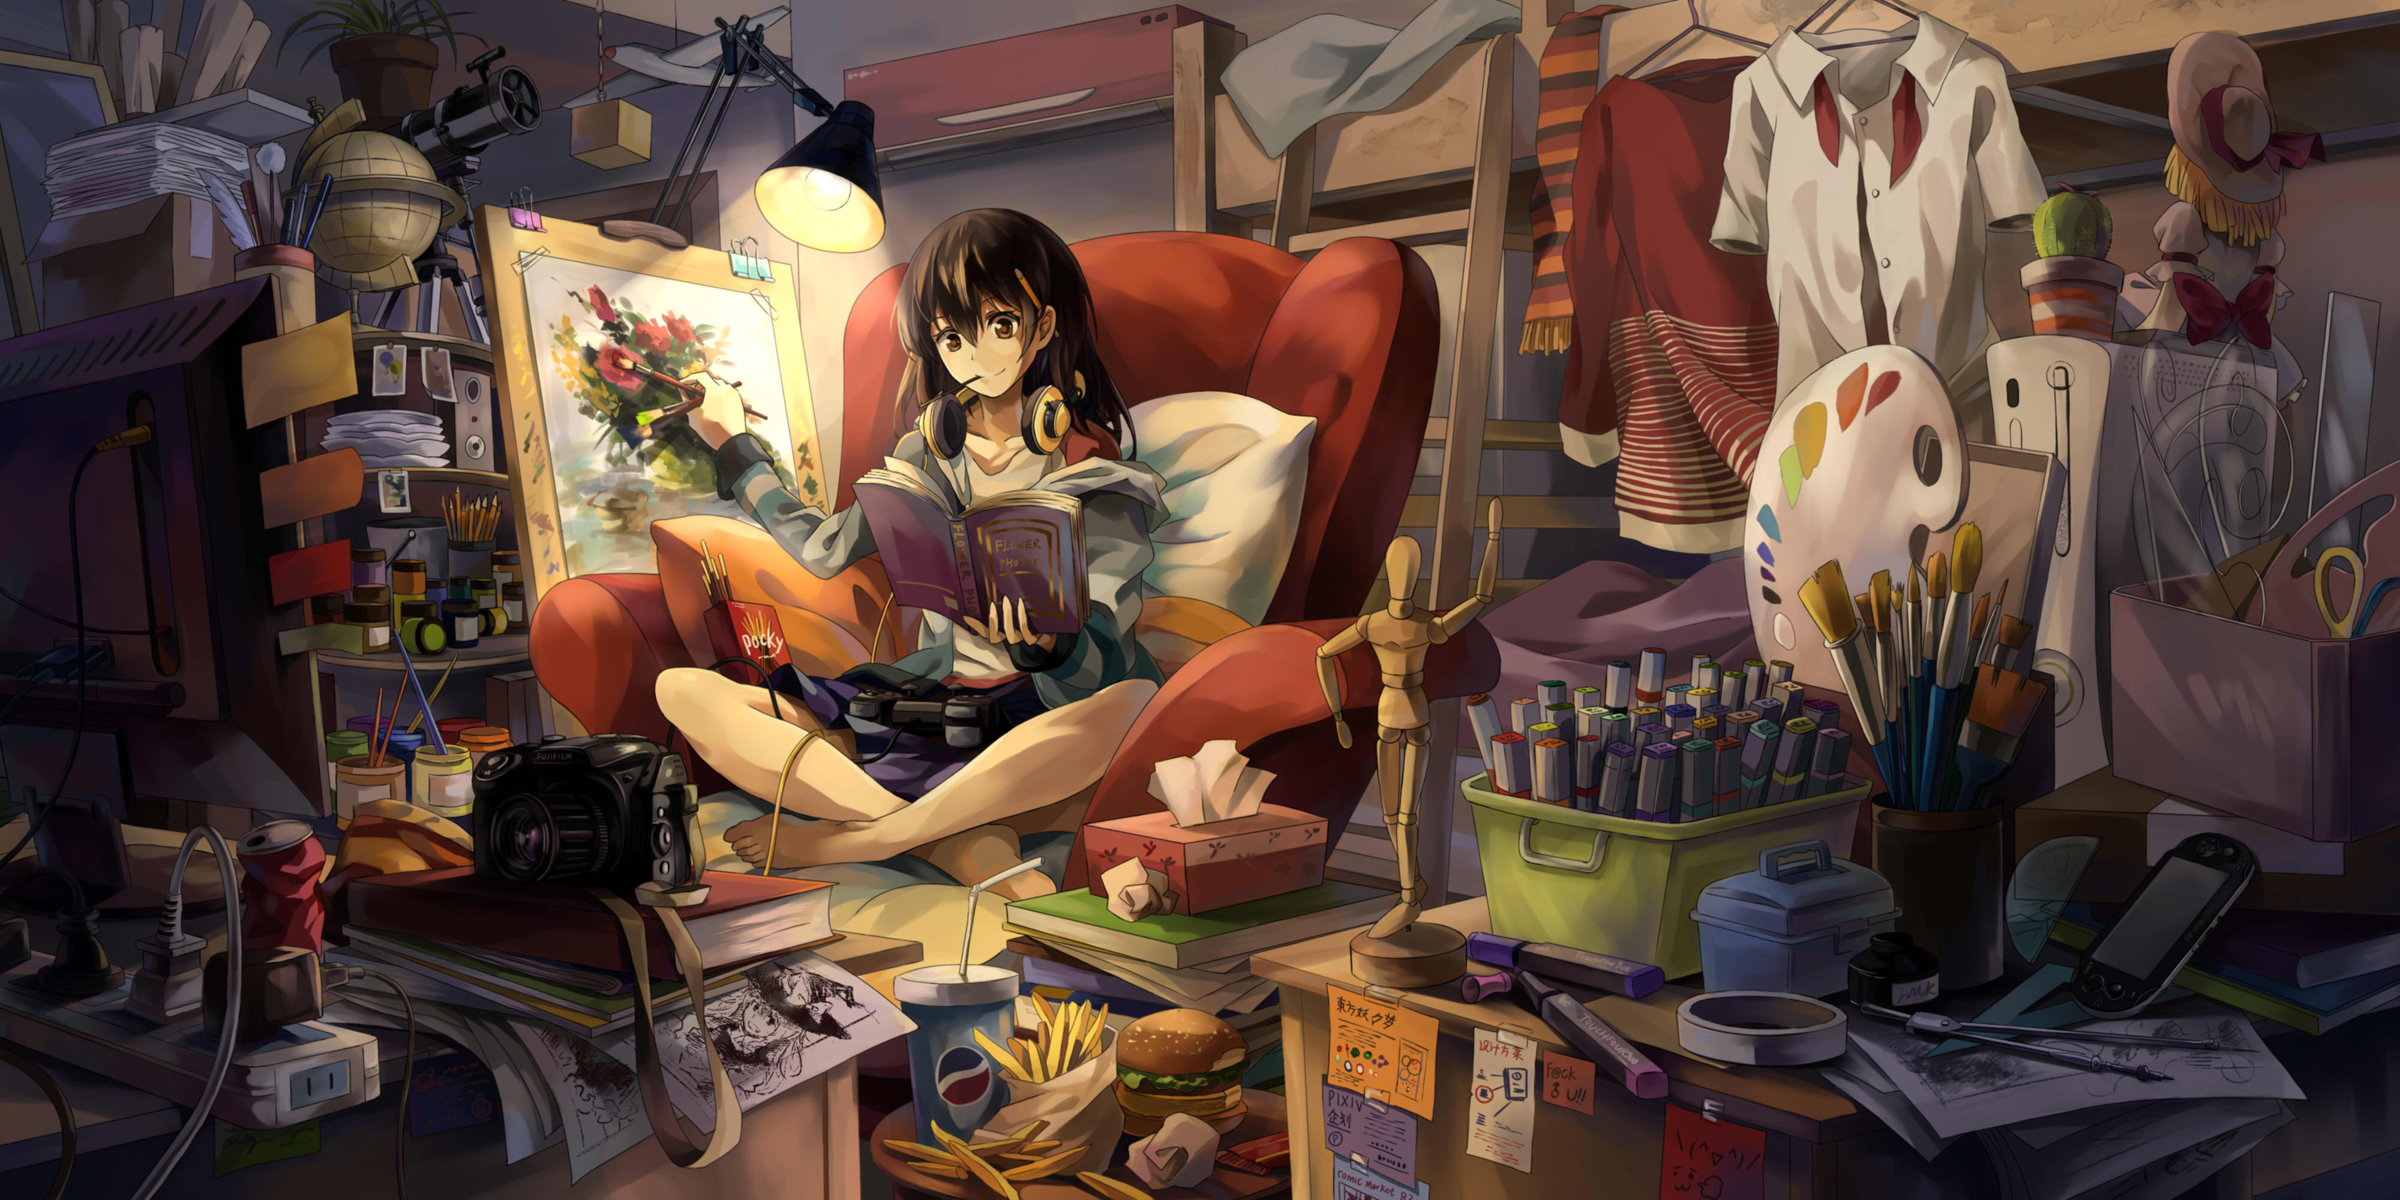 anime, girl, book, easel, headphones, lamp, room Aesthetic wallpaper